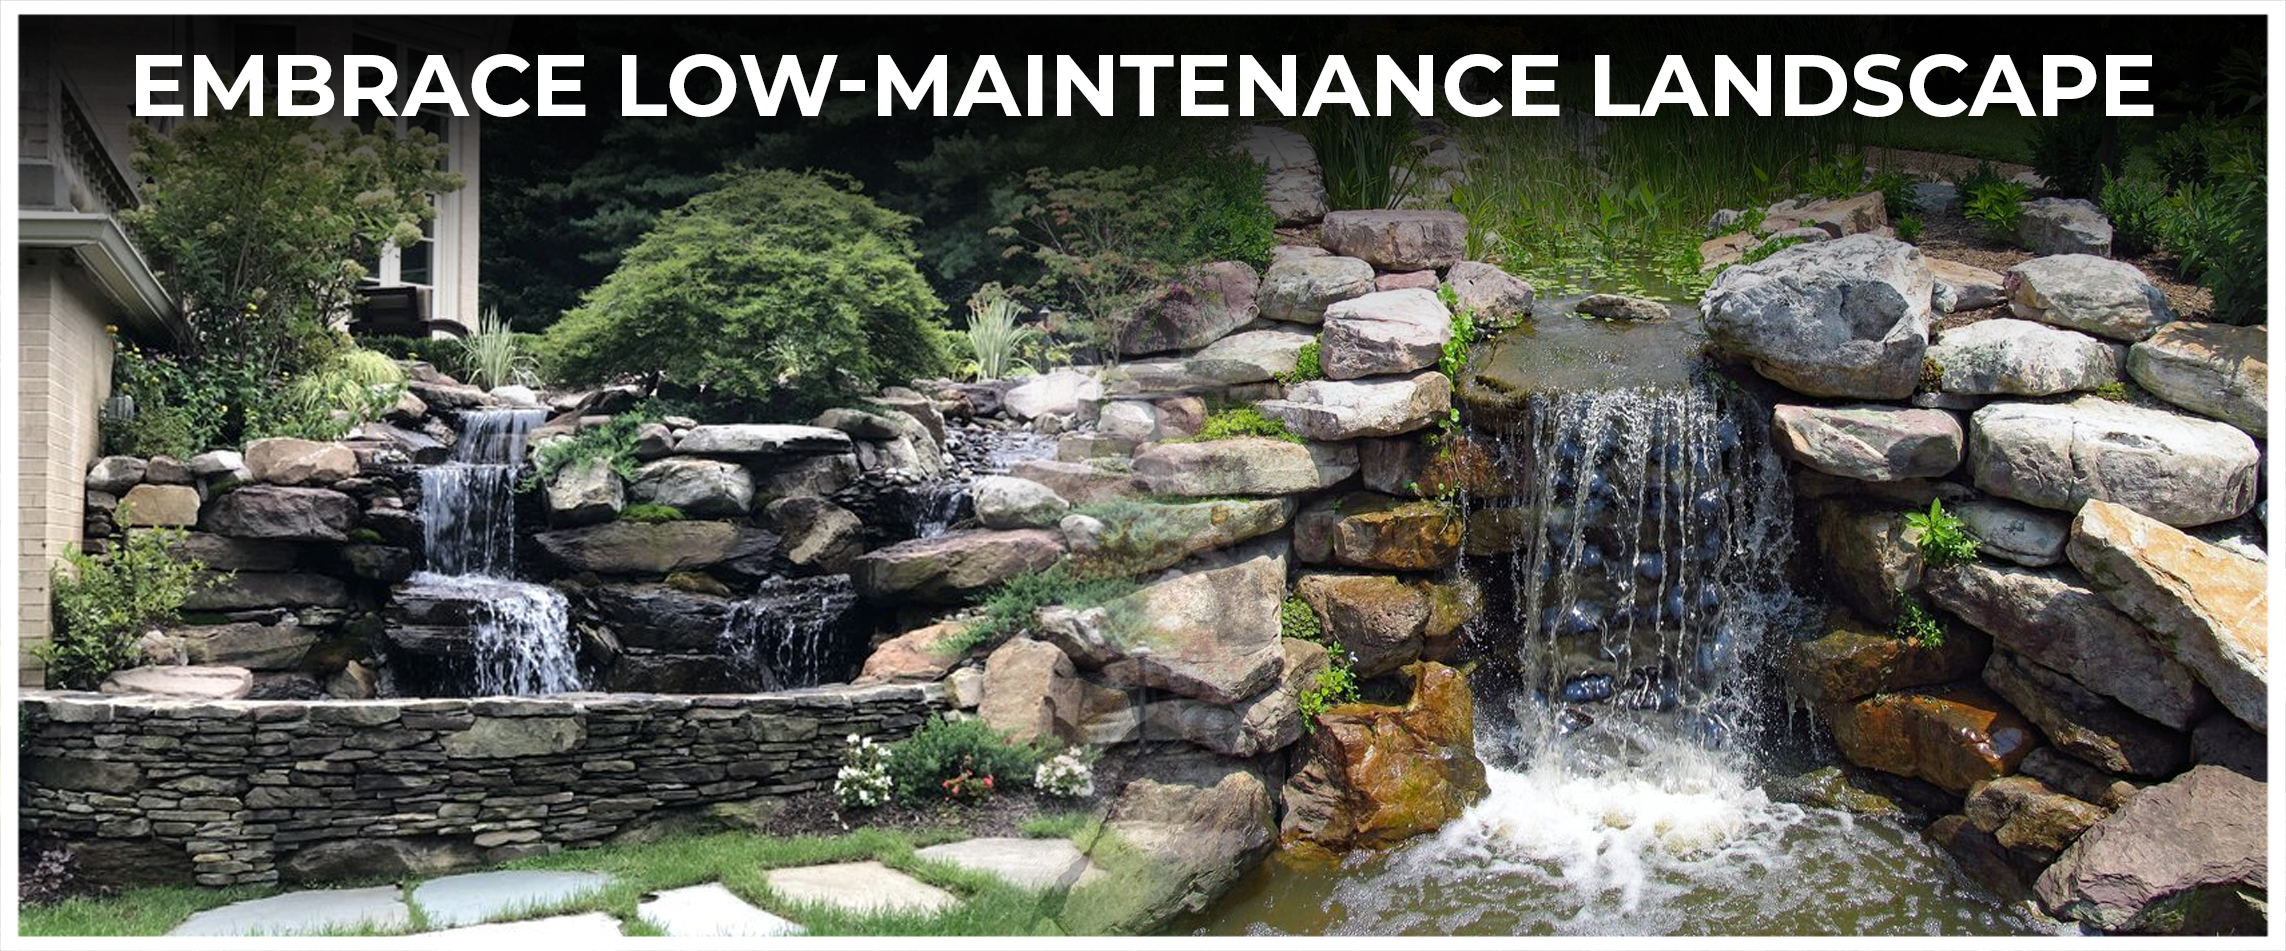 Embrace Low-Maintenance Landscape